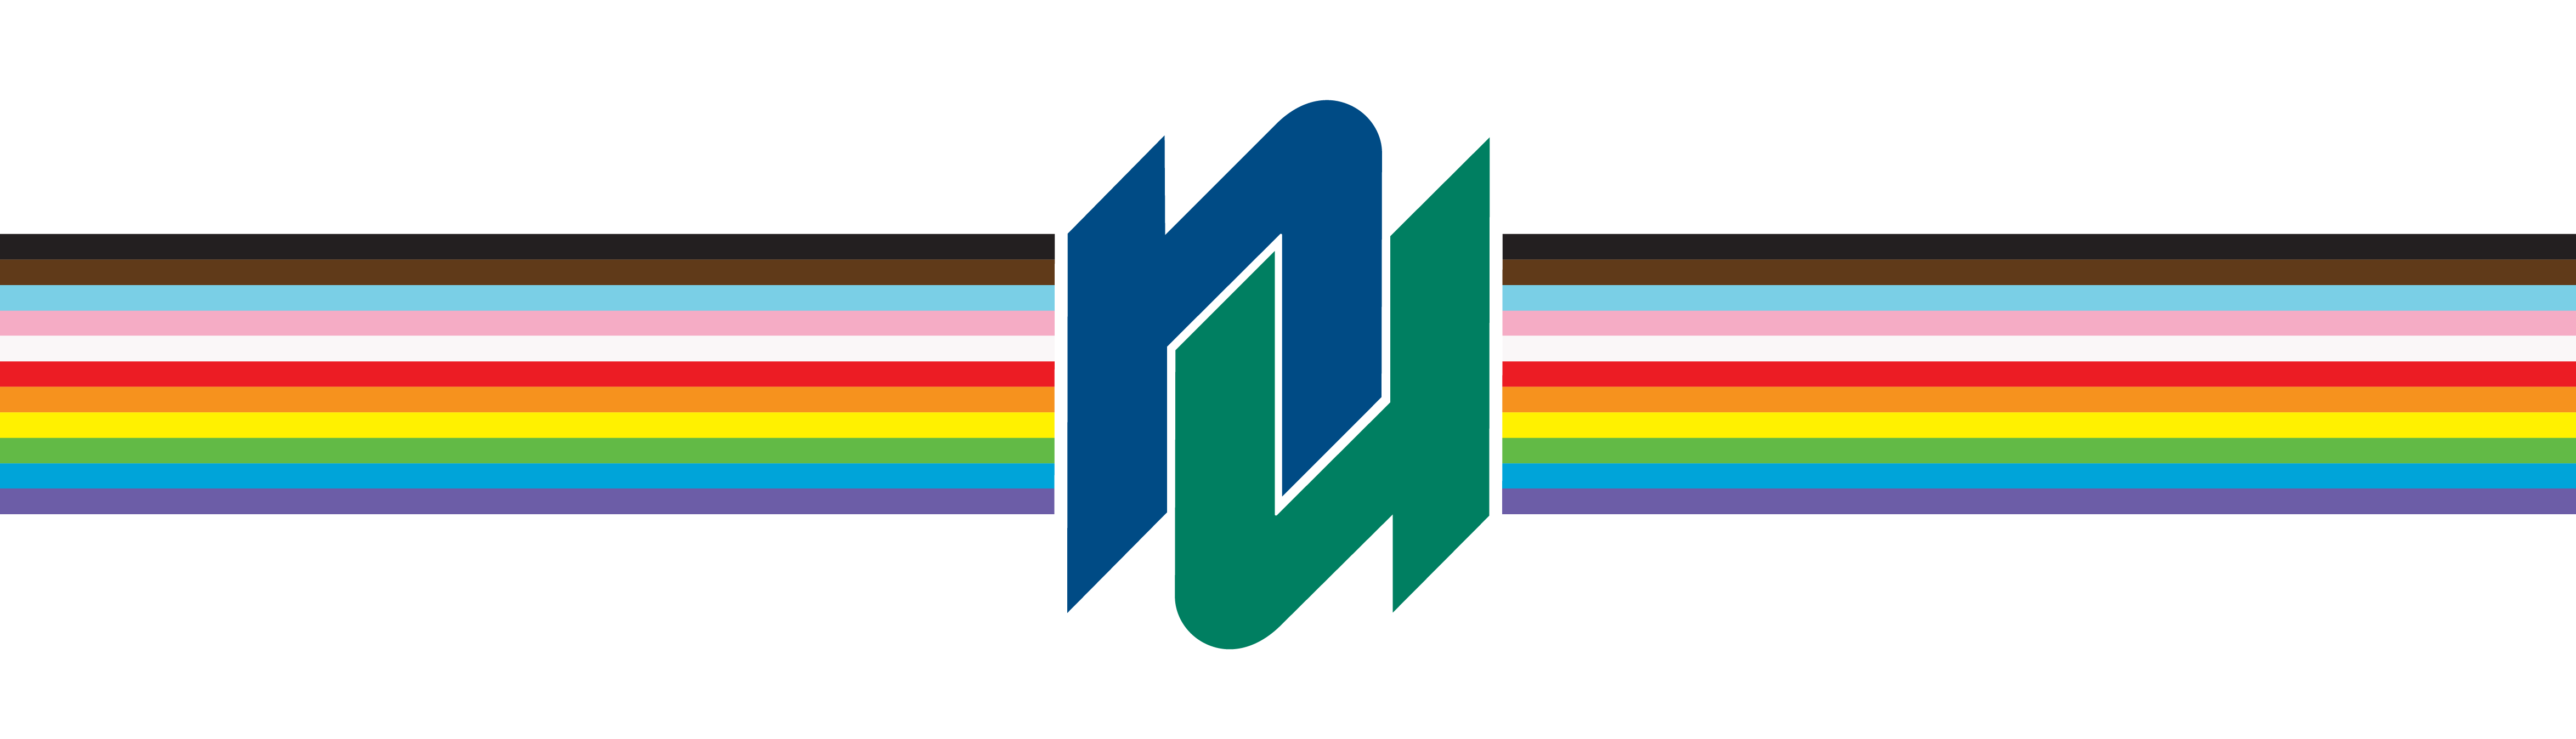 NU logo with pride rainbow